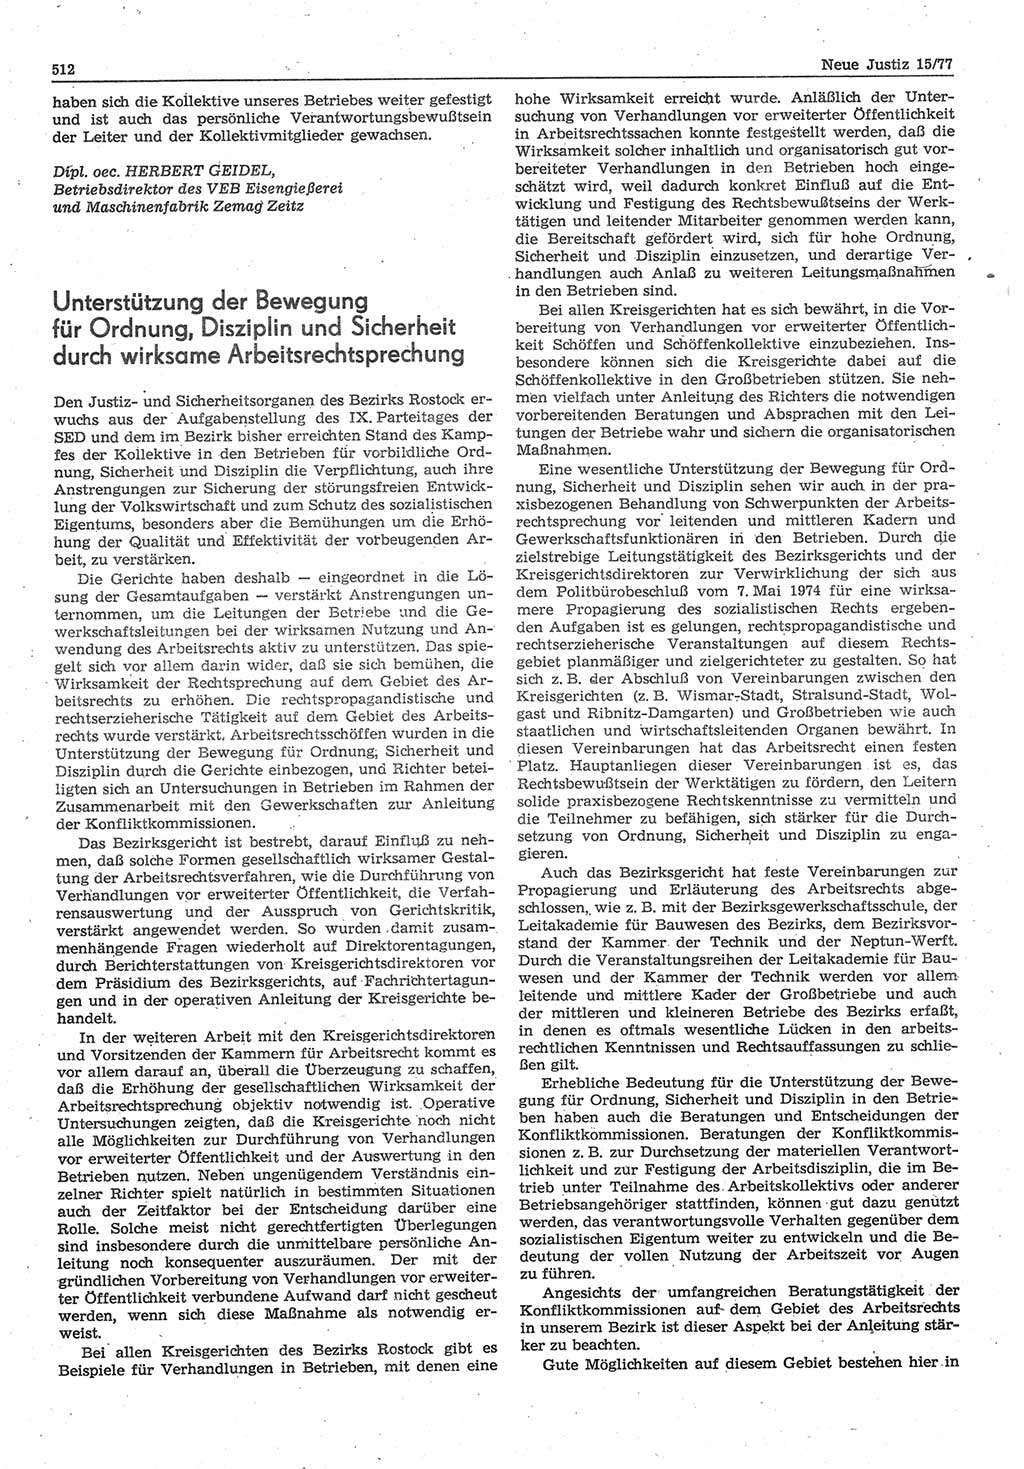 Neue Justiz (NJ), Zeitschrift für Recht und Rechtswissenschaft-Zeitschrift, sozialistisches Recht und Gesetzlichkeit, 31. Jahrgang 1977, Seite 512 (NJ DDR 1977, S. 512)